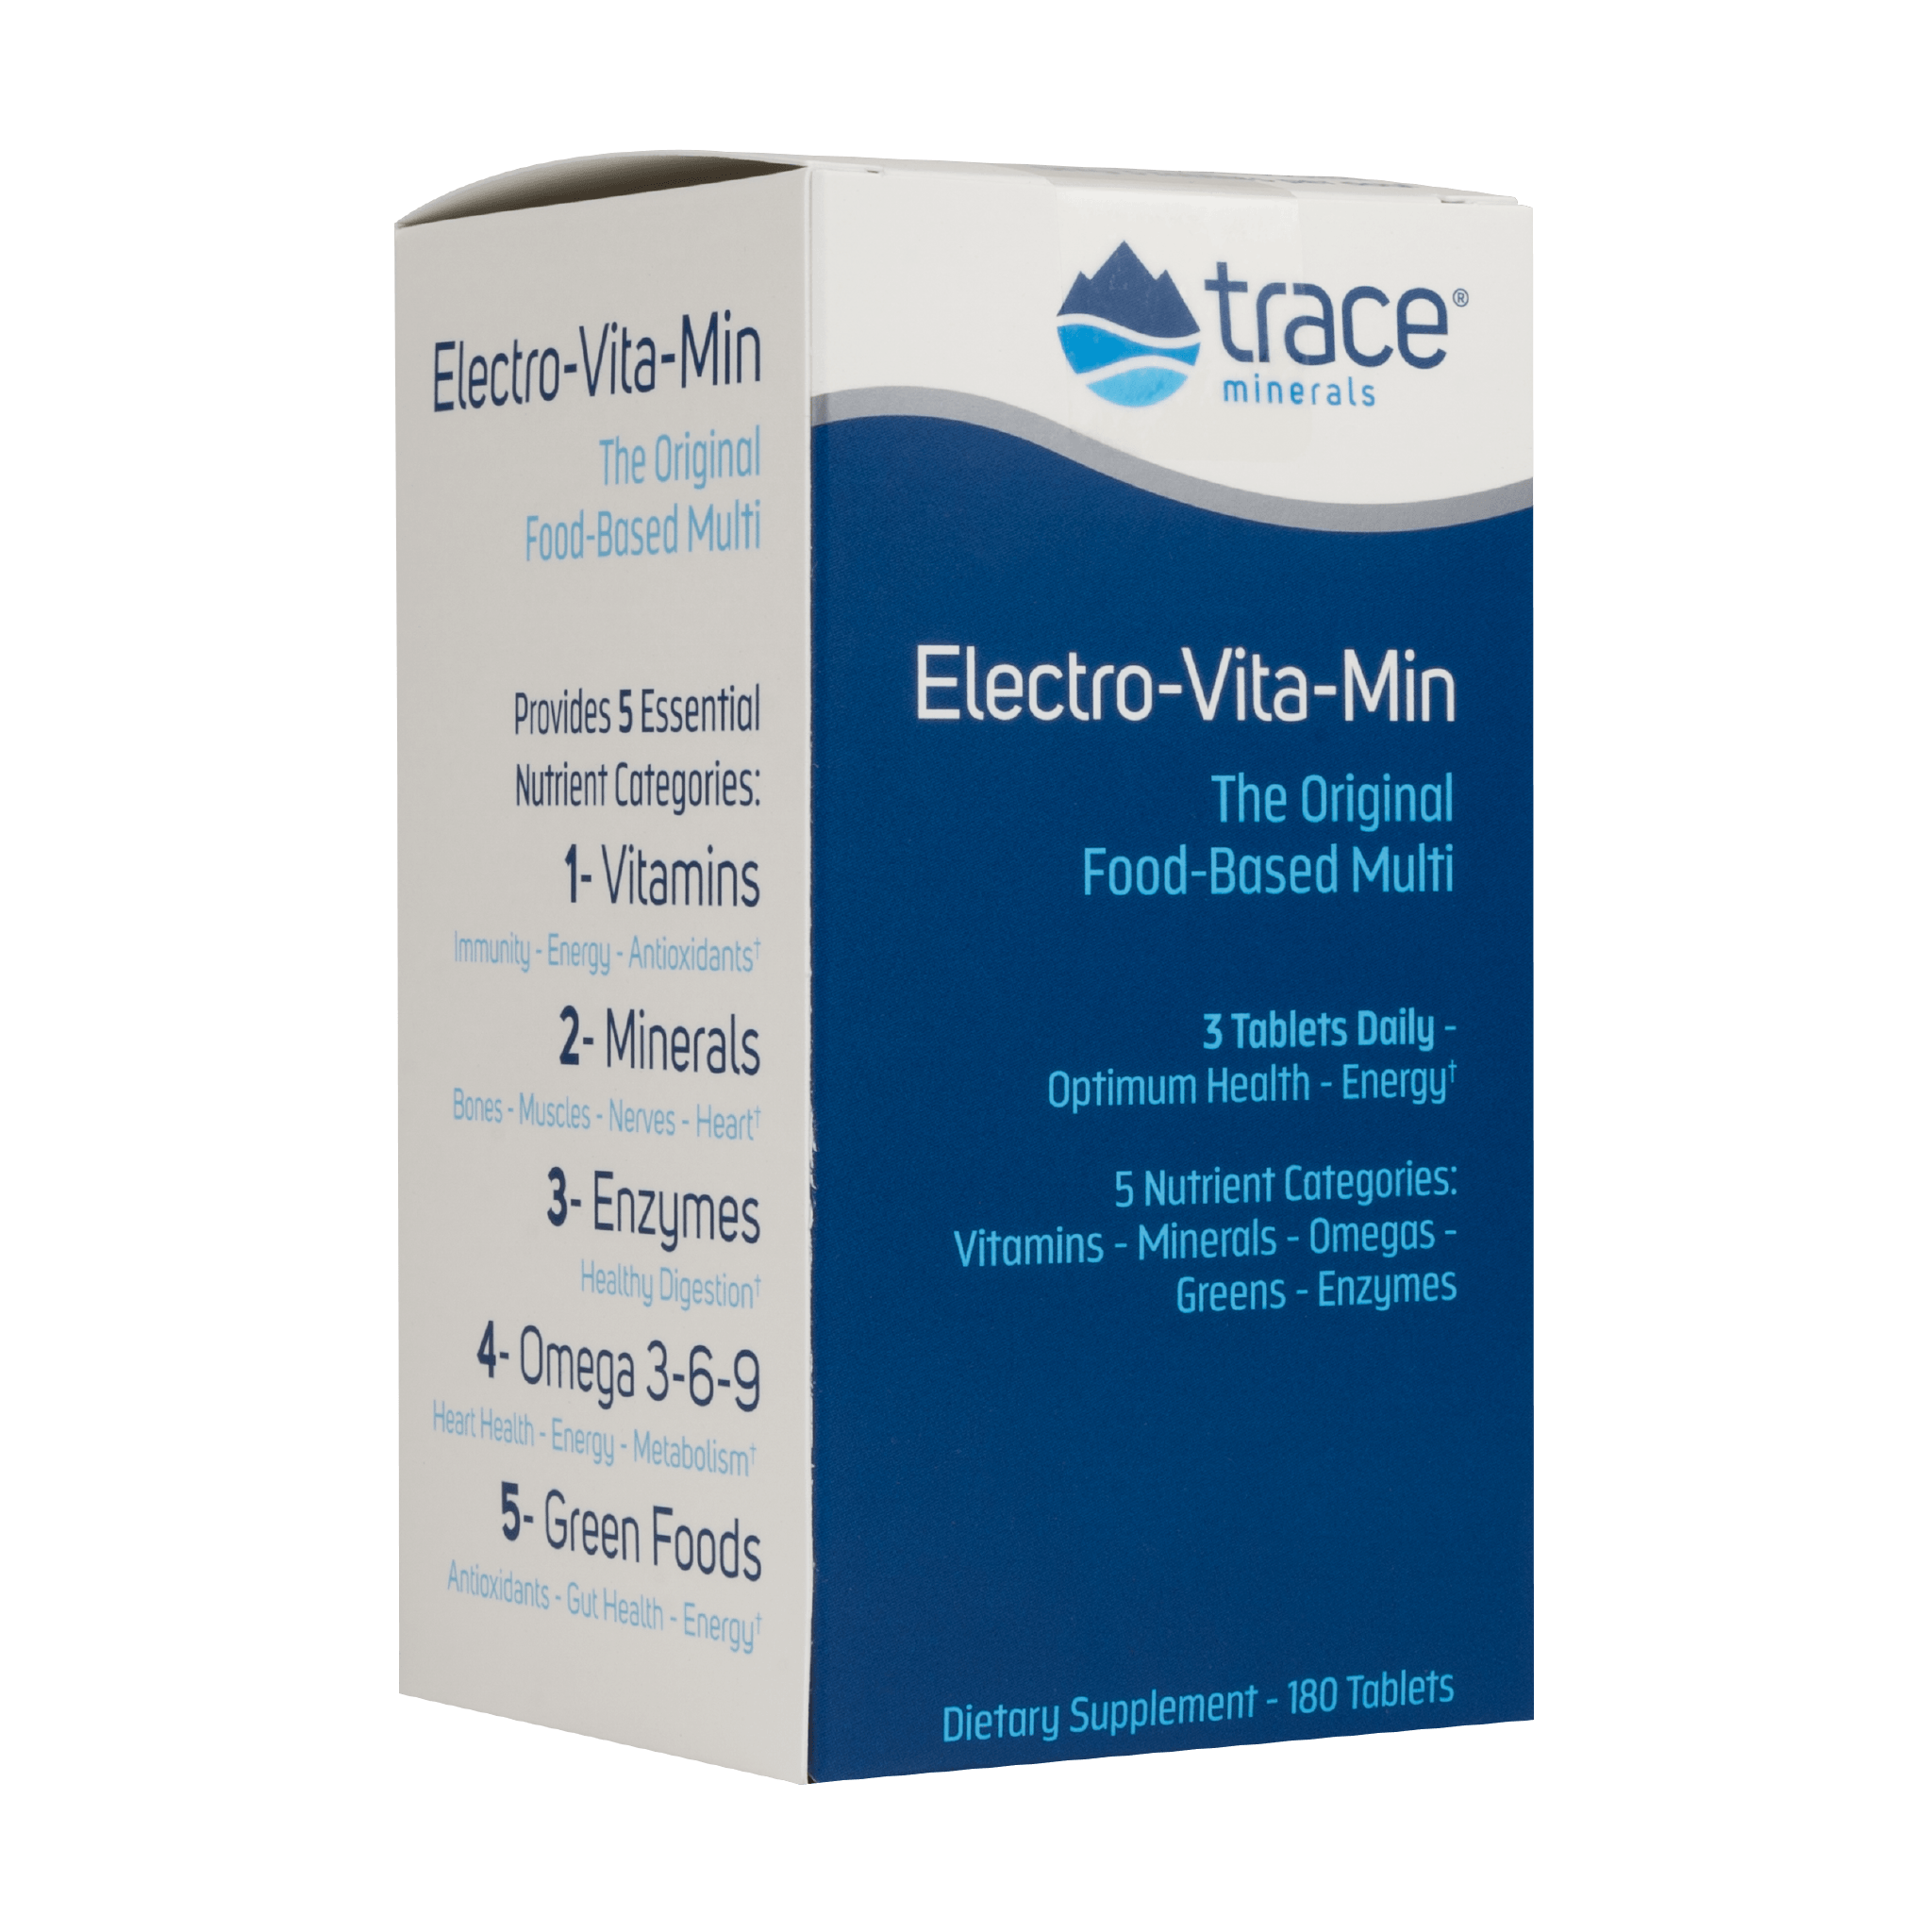 Electro-Vita-Min Daily 5 - Trace Minerals